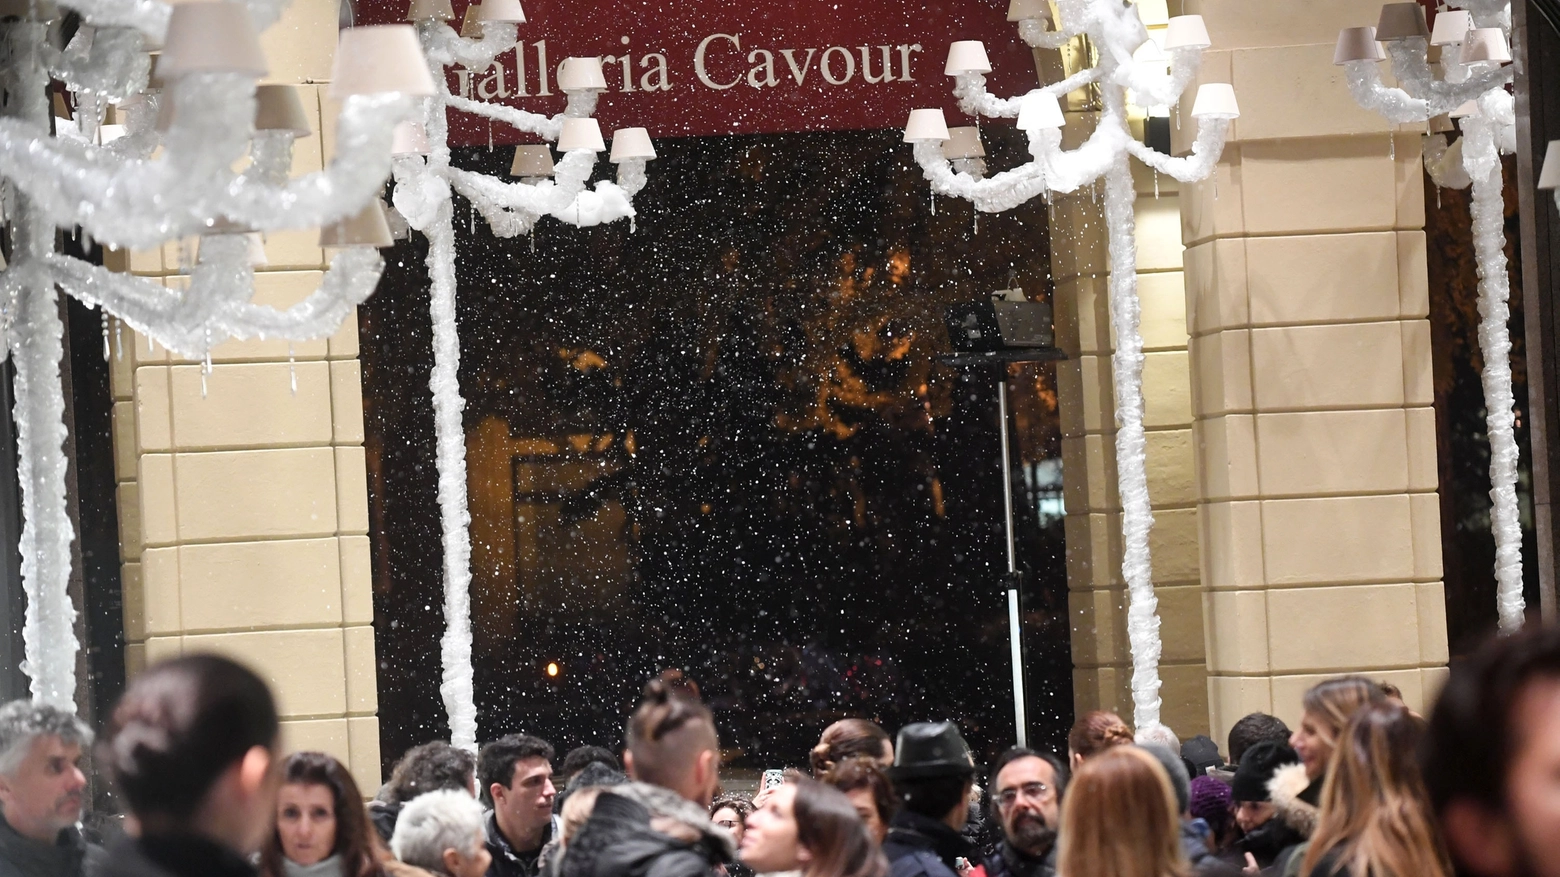 Neve artificiale per la festa di Natale in Galleria Cavour (Foto Schicchi)